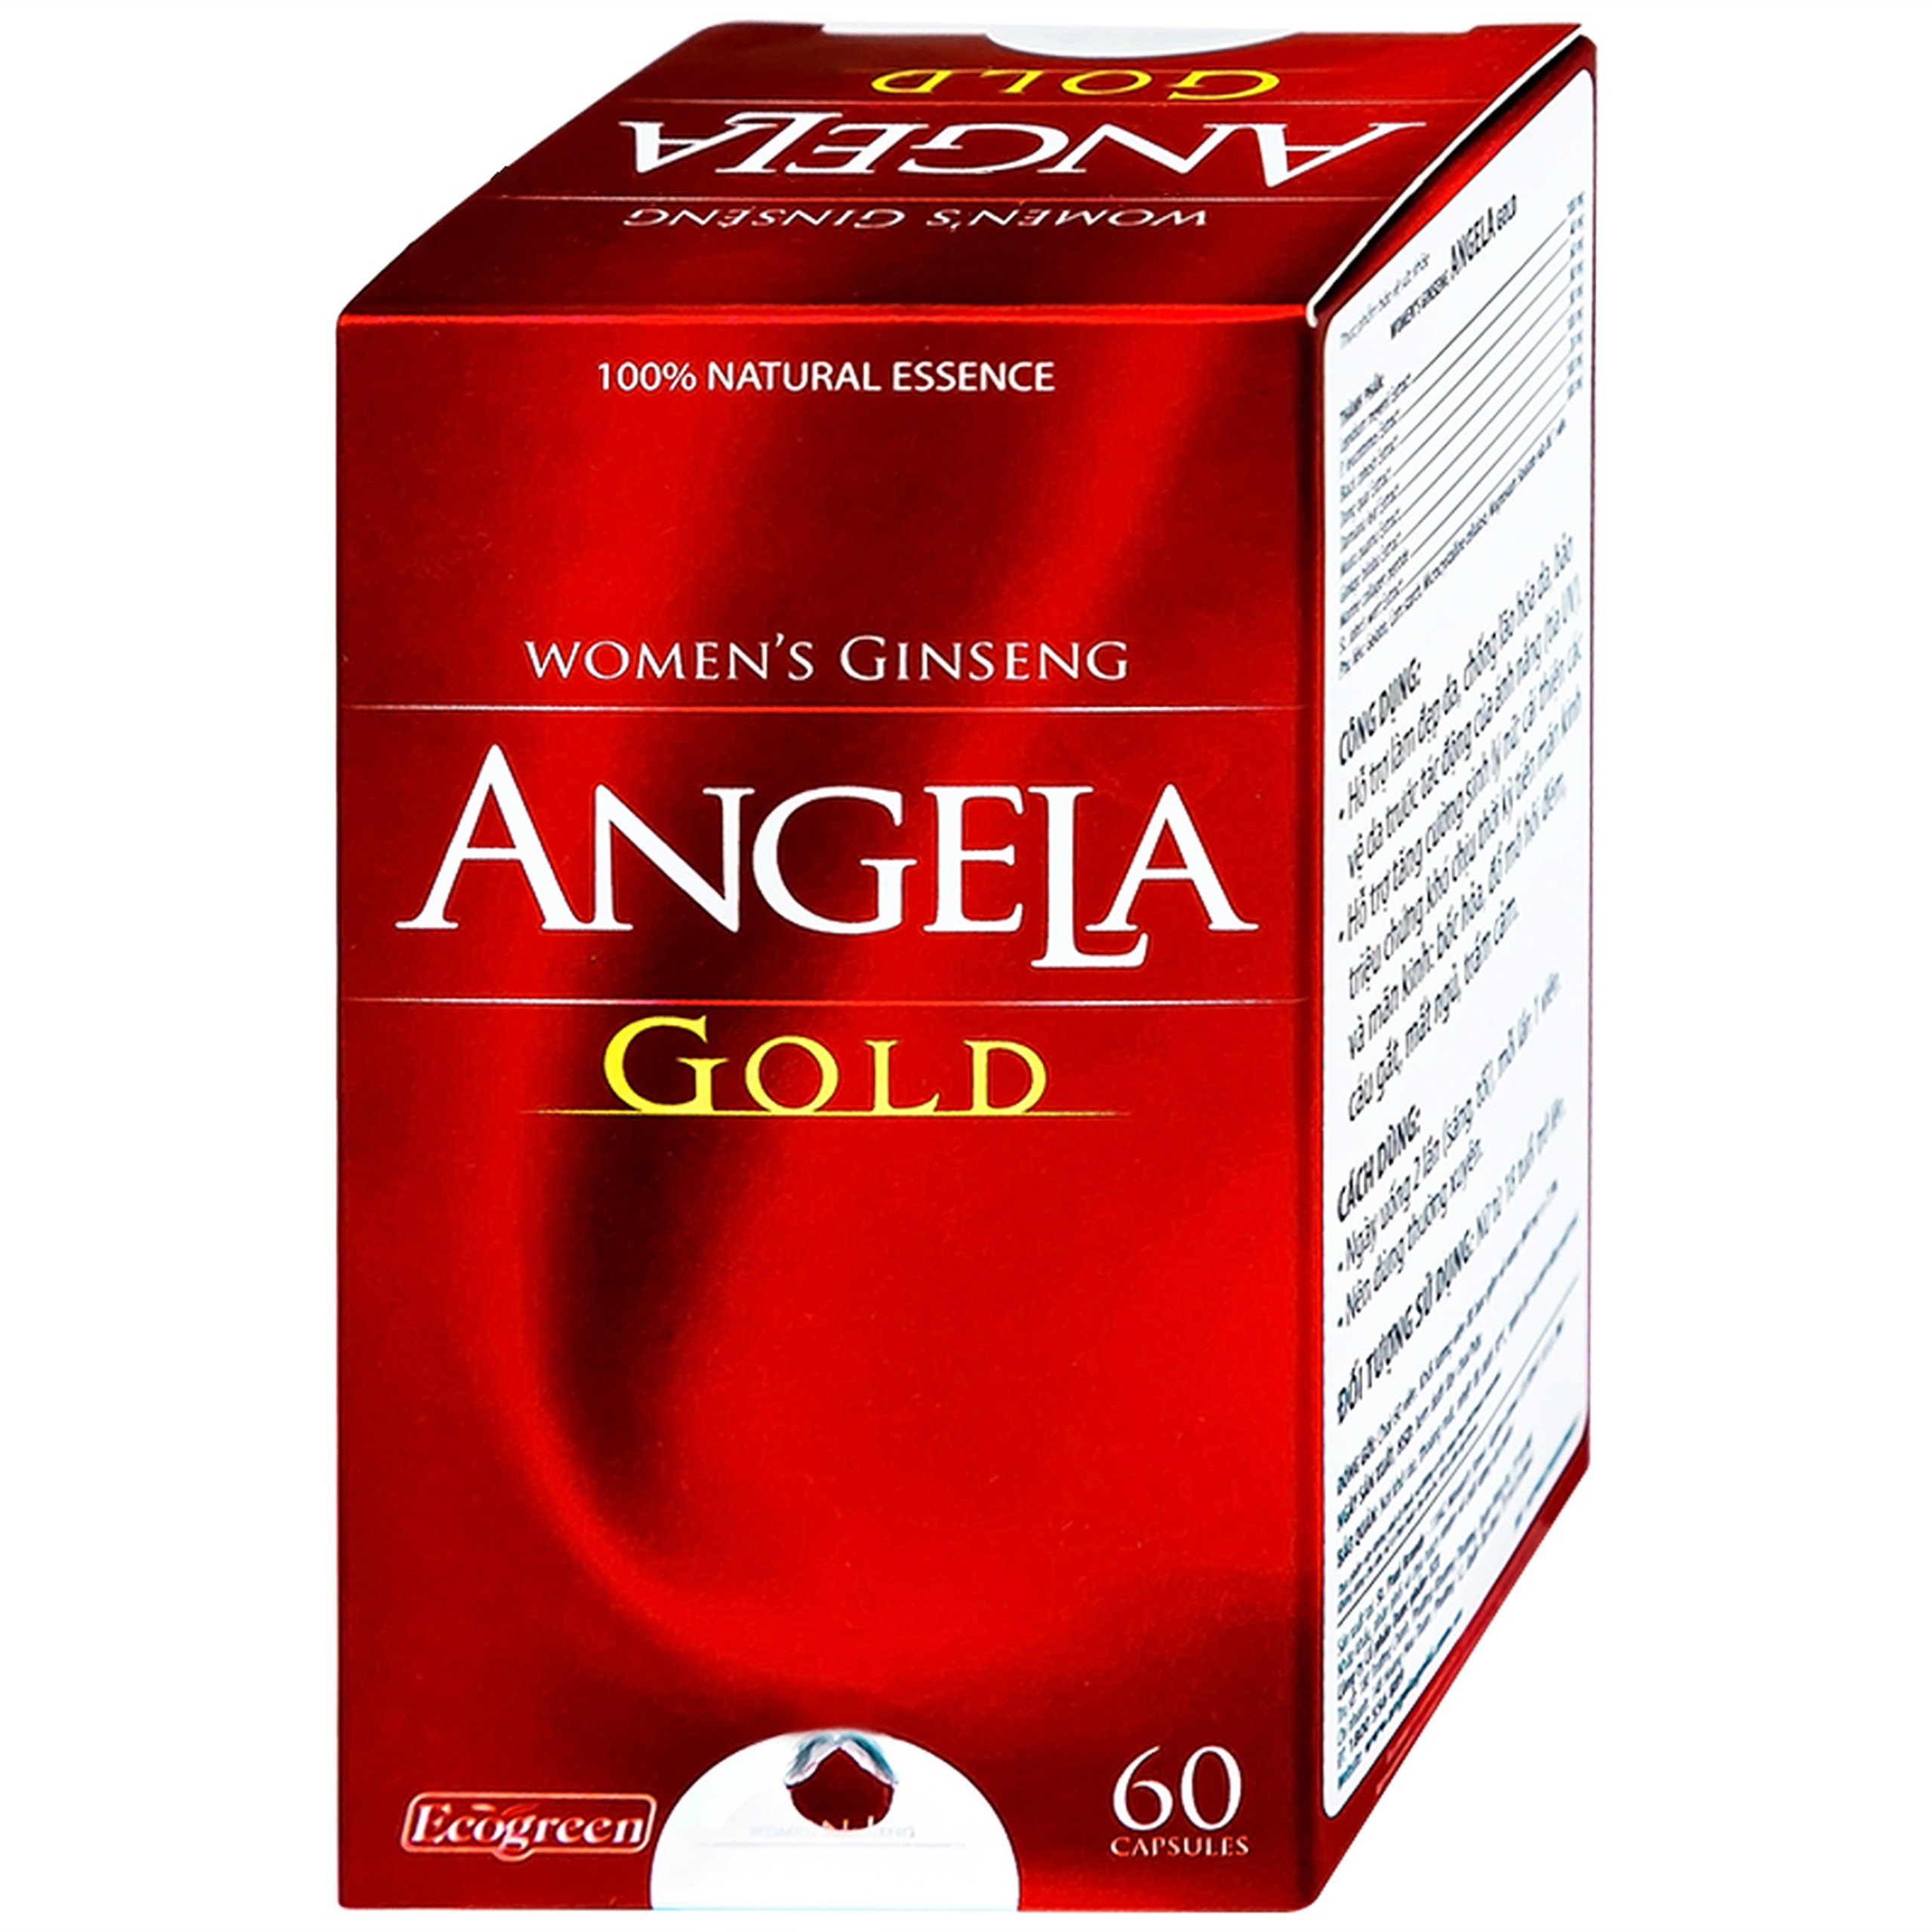 Viên uống sâm Angela Gold Ecogreen làn da căng sáng, tăng cường sinh lý nữ (60 viên)